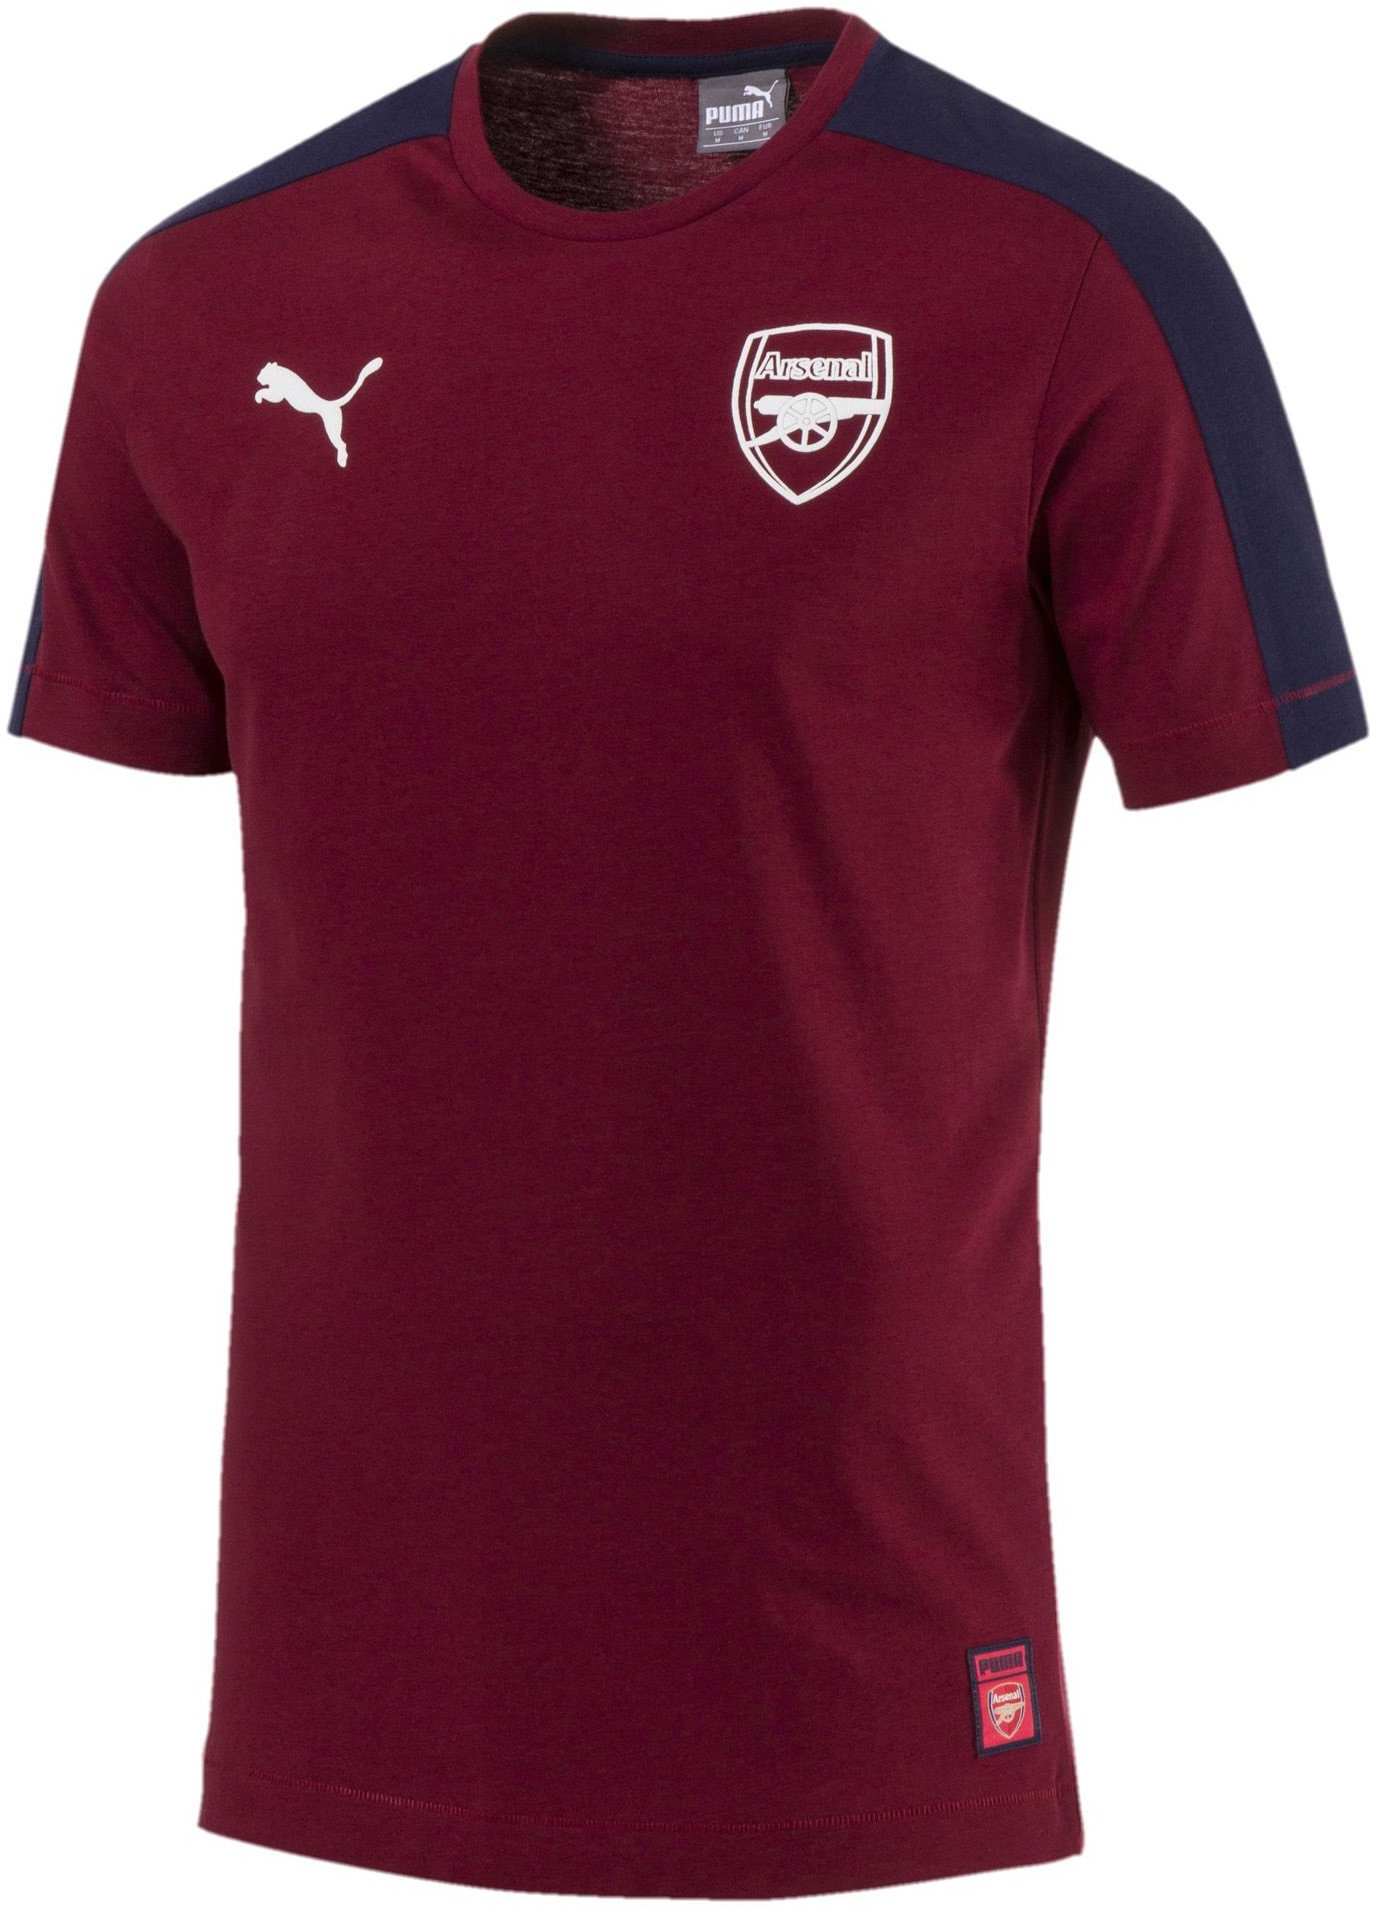 T-shirt Puma Arsenal FC Fan T7 Pomegranate